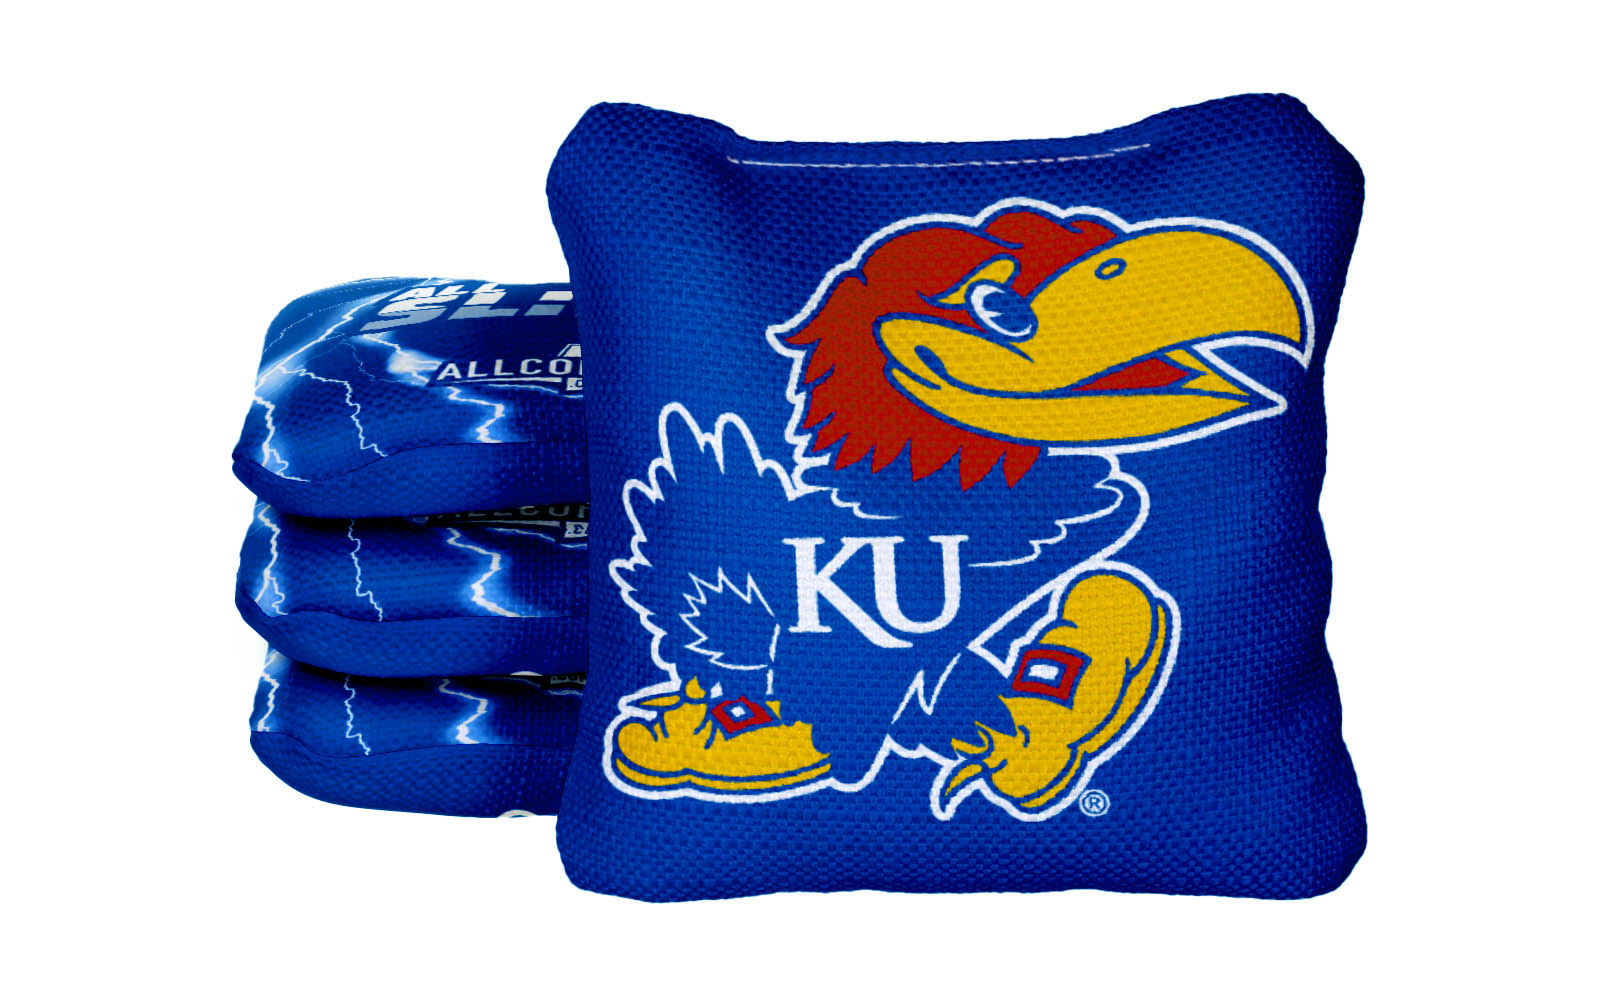 Officially Licensed Collegiate Cornhole Bags - All-Slide 2.0 - Set of 4 - University of Kansas